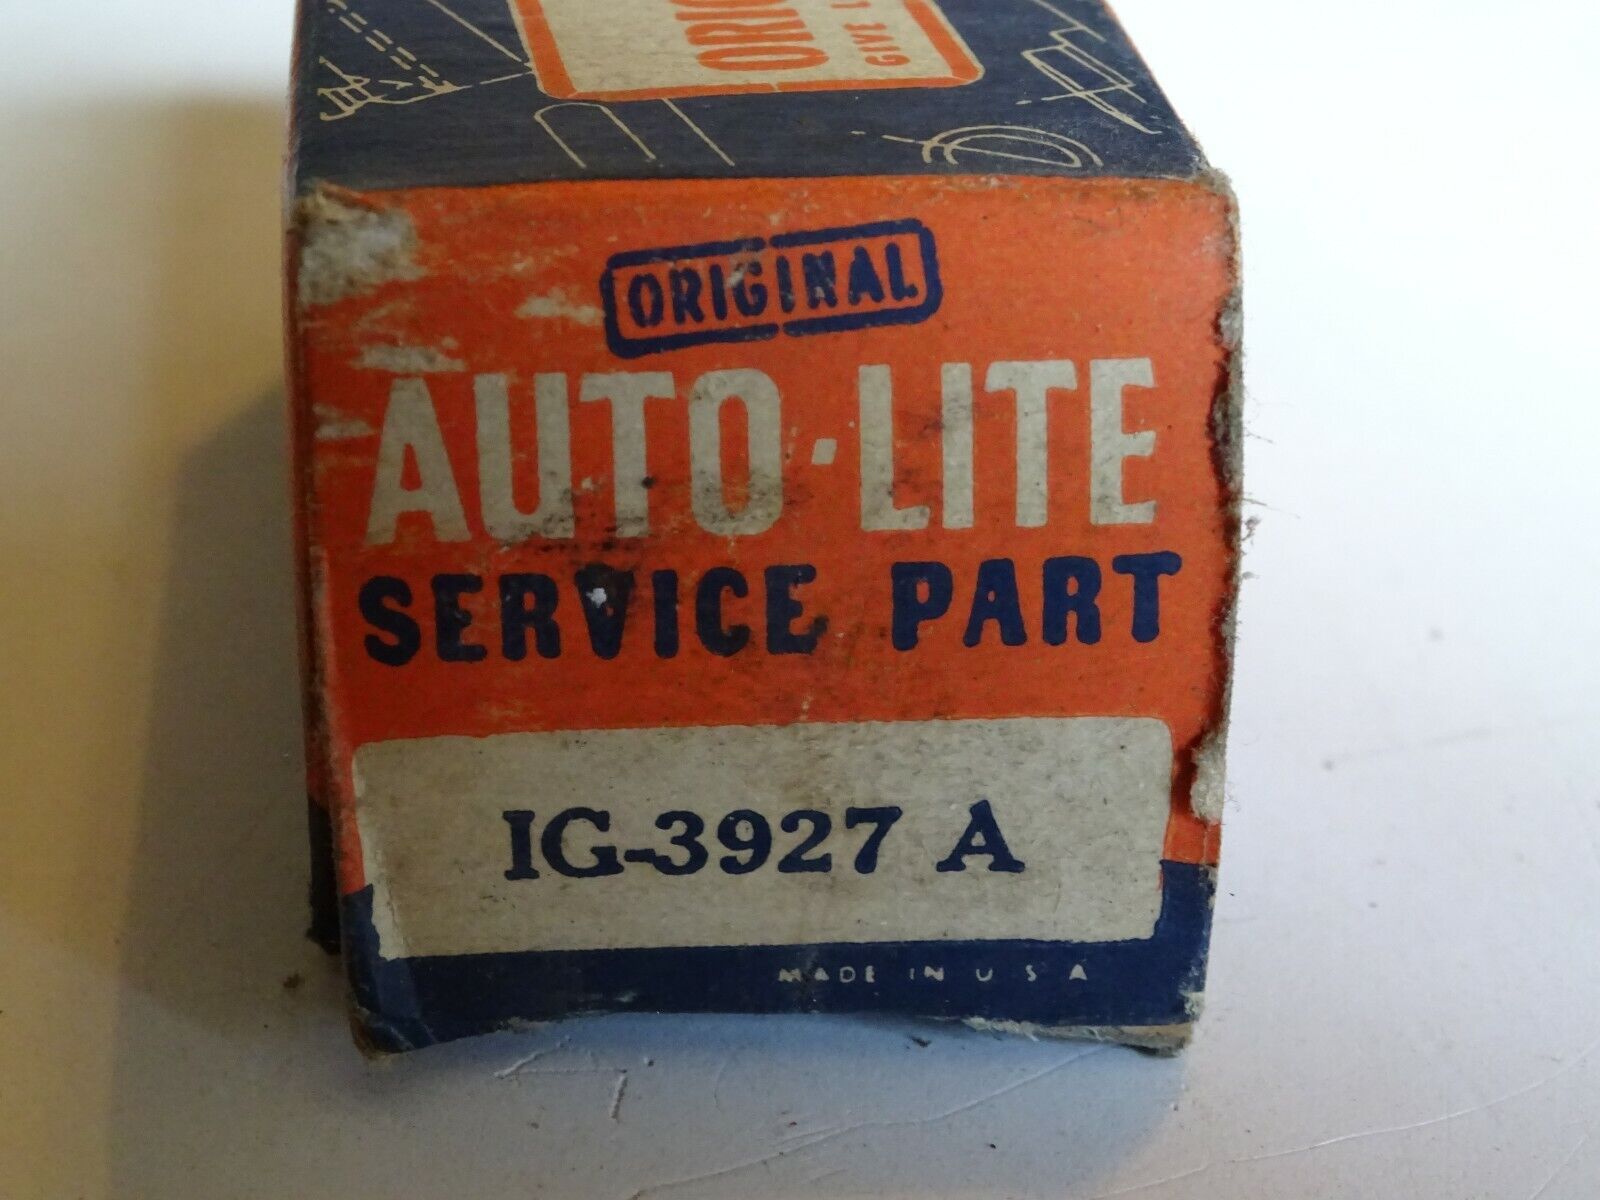 vintage Auto Lite Service Part Box IG-3927A with points